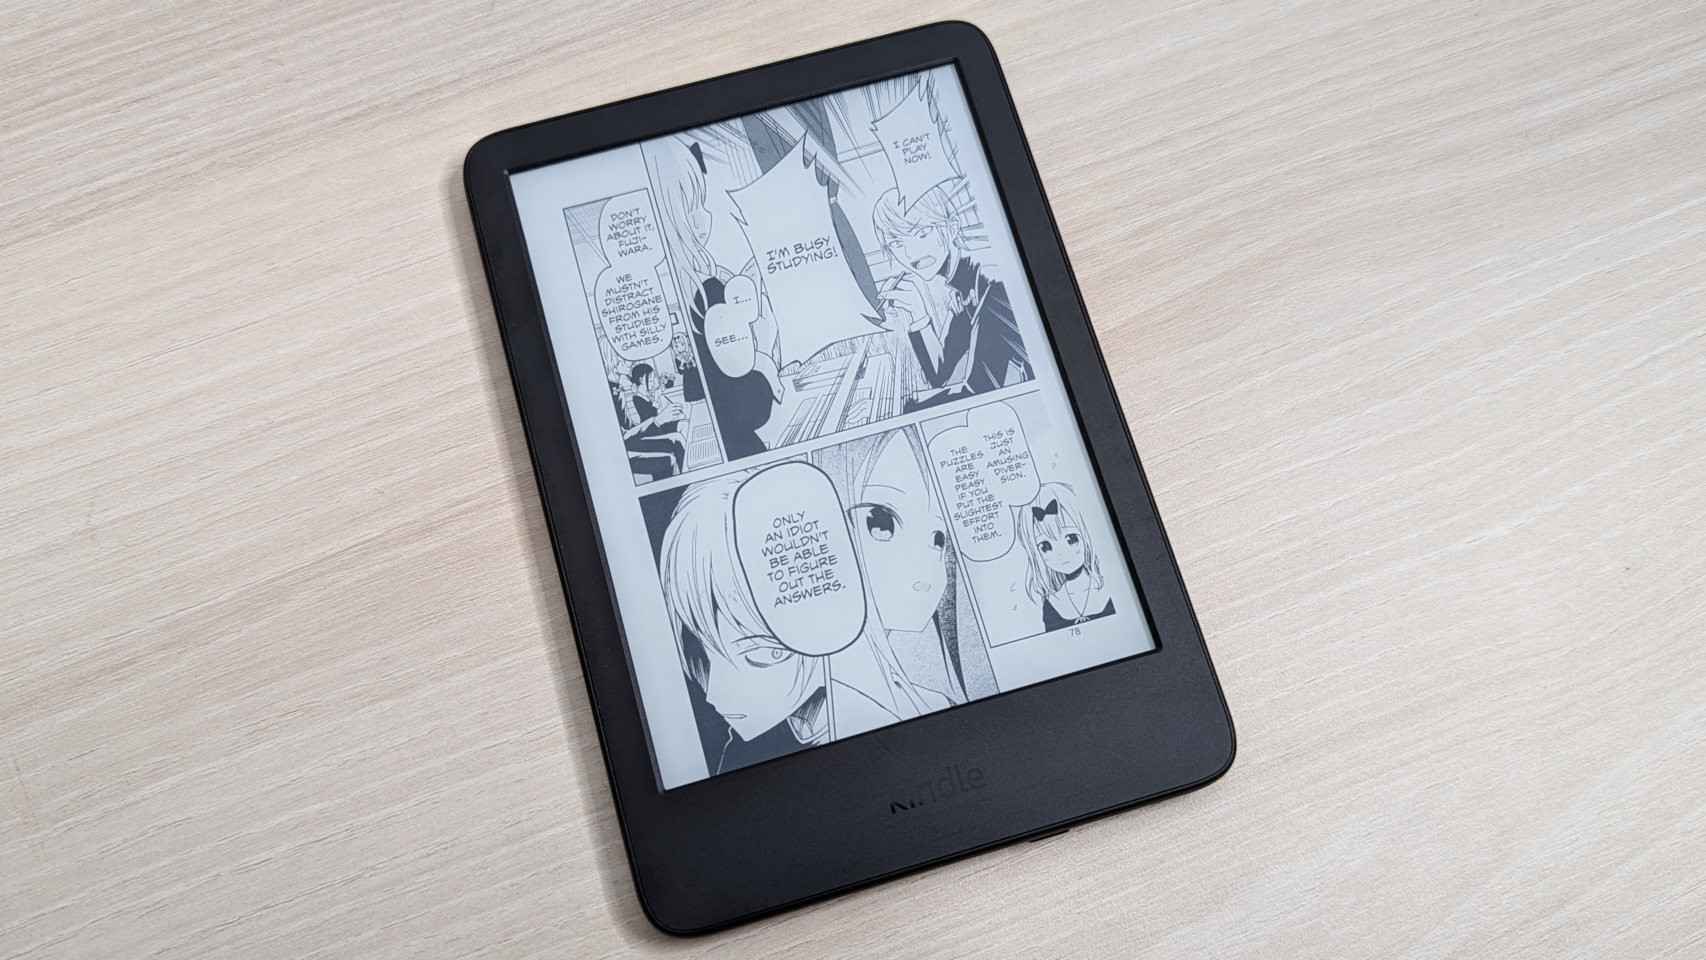 La nueva pantalla y la mayor potencia del Kindle permite leer cómics y manga